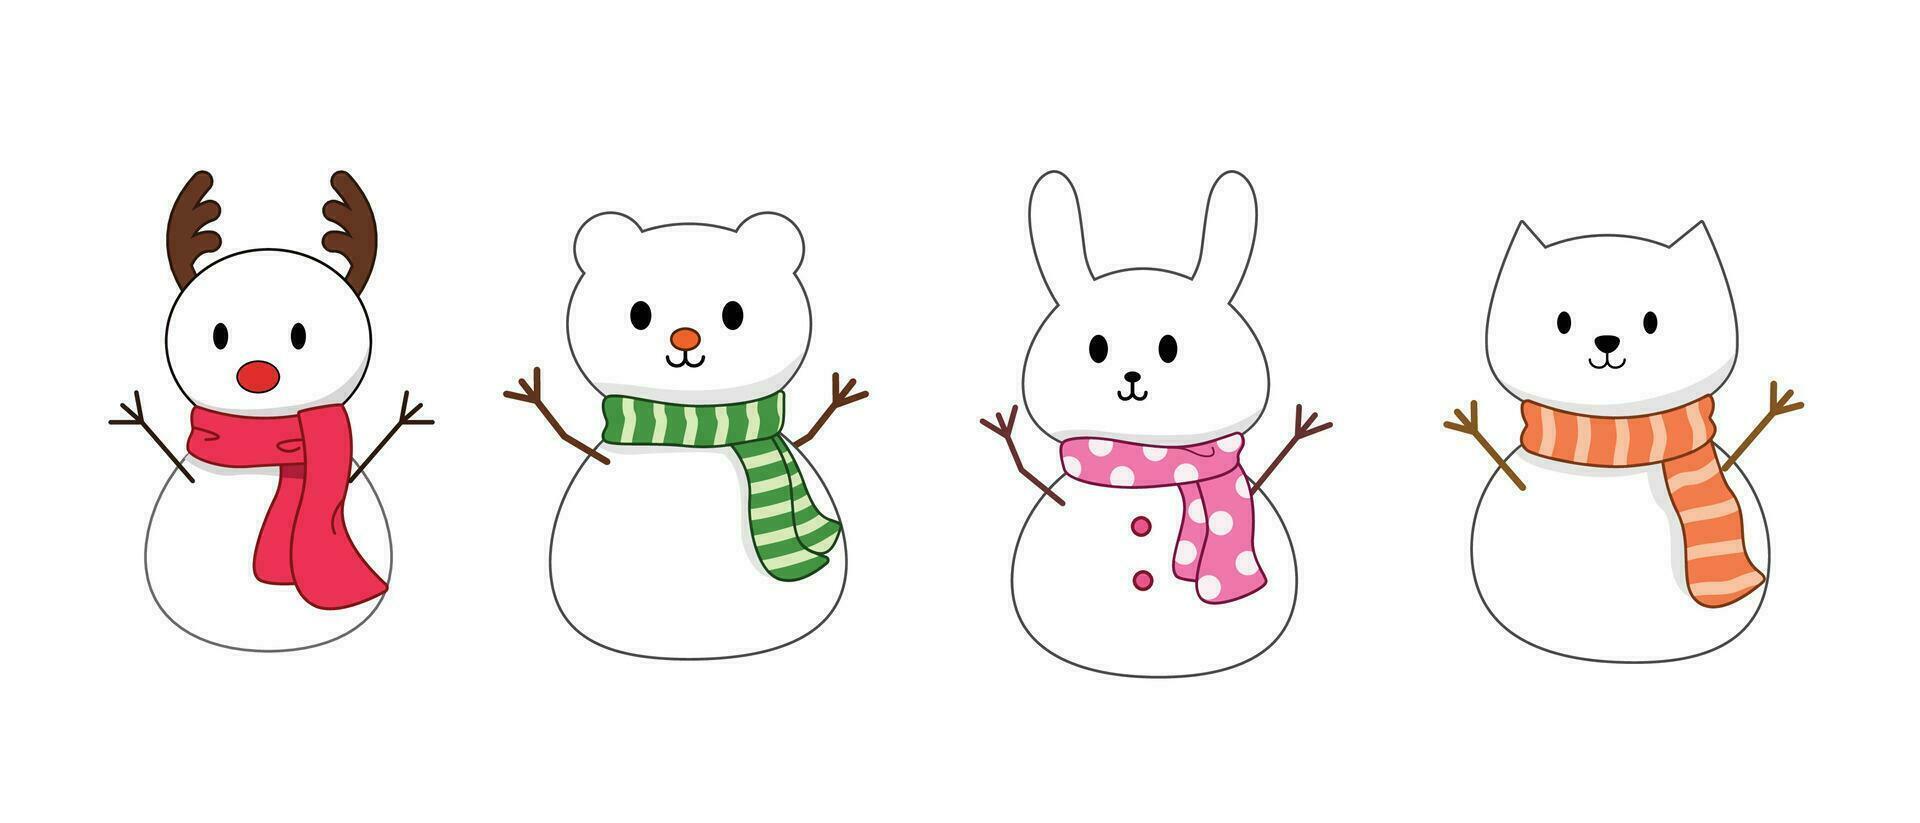 animais boneco de neve desenho animado. rena, coelho, gato, Urso para ilustração e decoração vetor